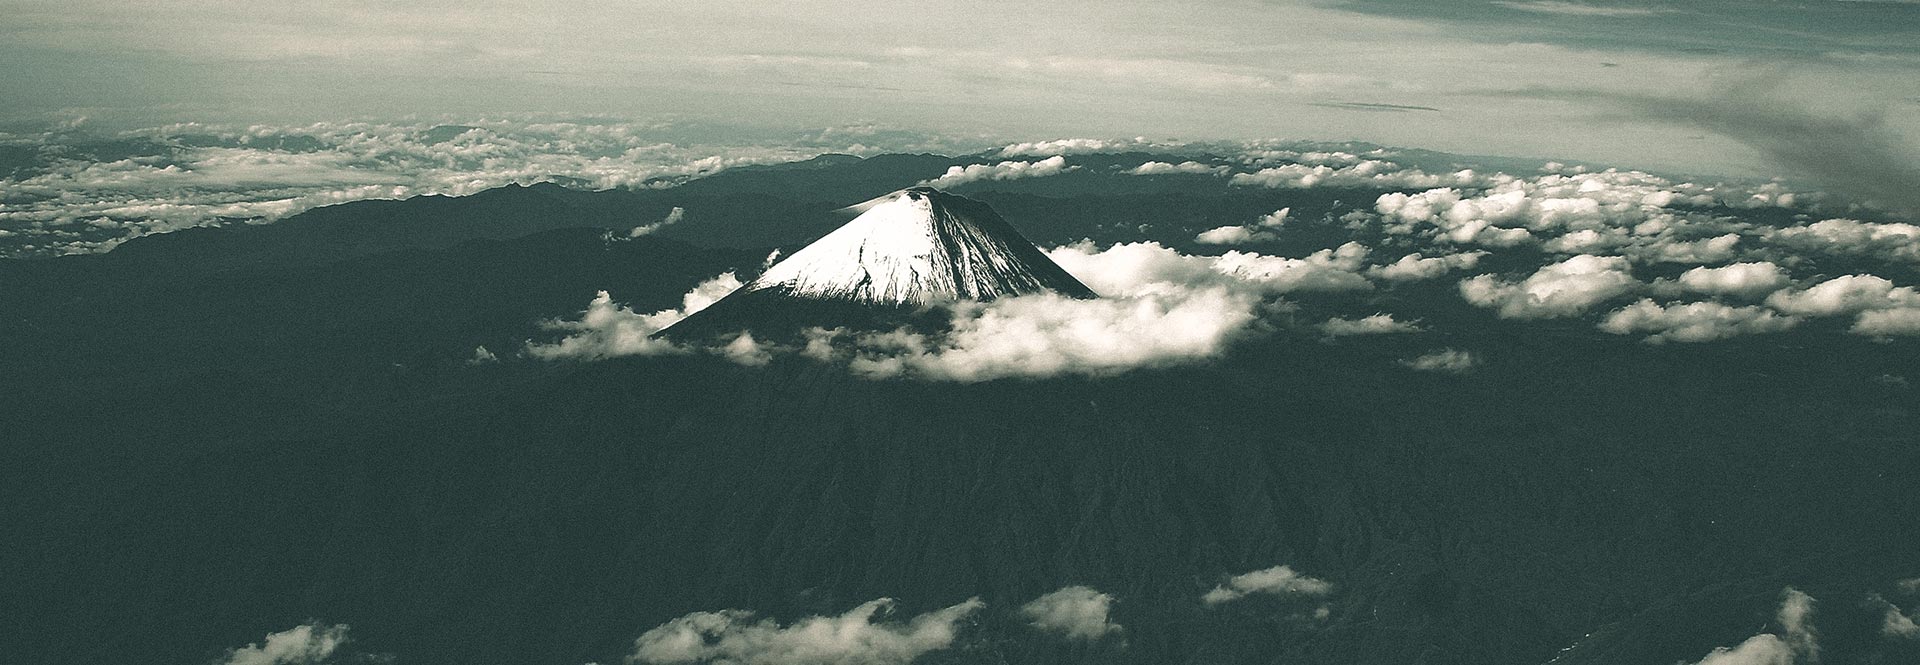 Escalade en montagne Équateur Volcans